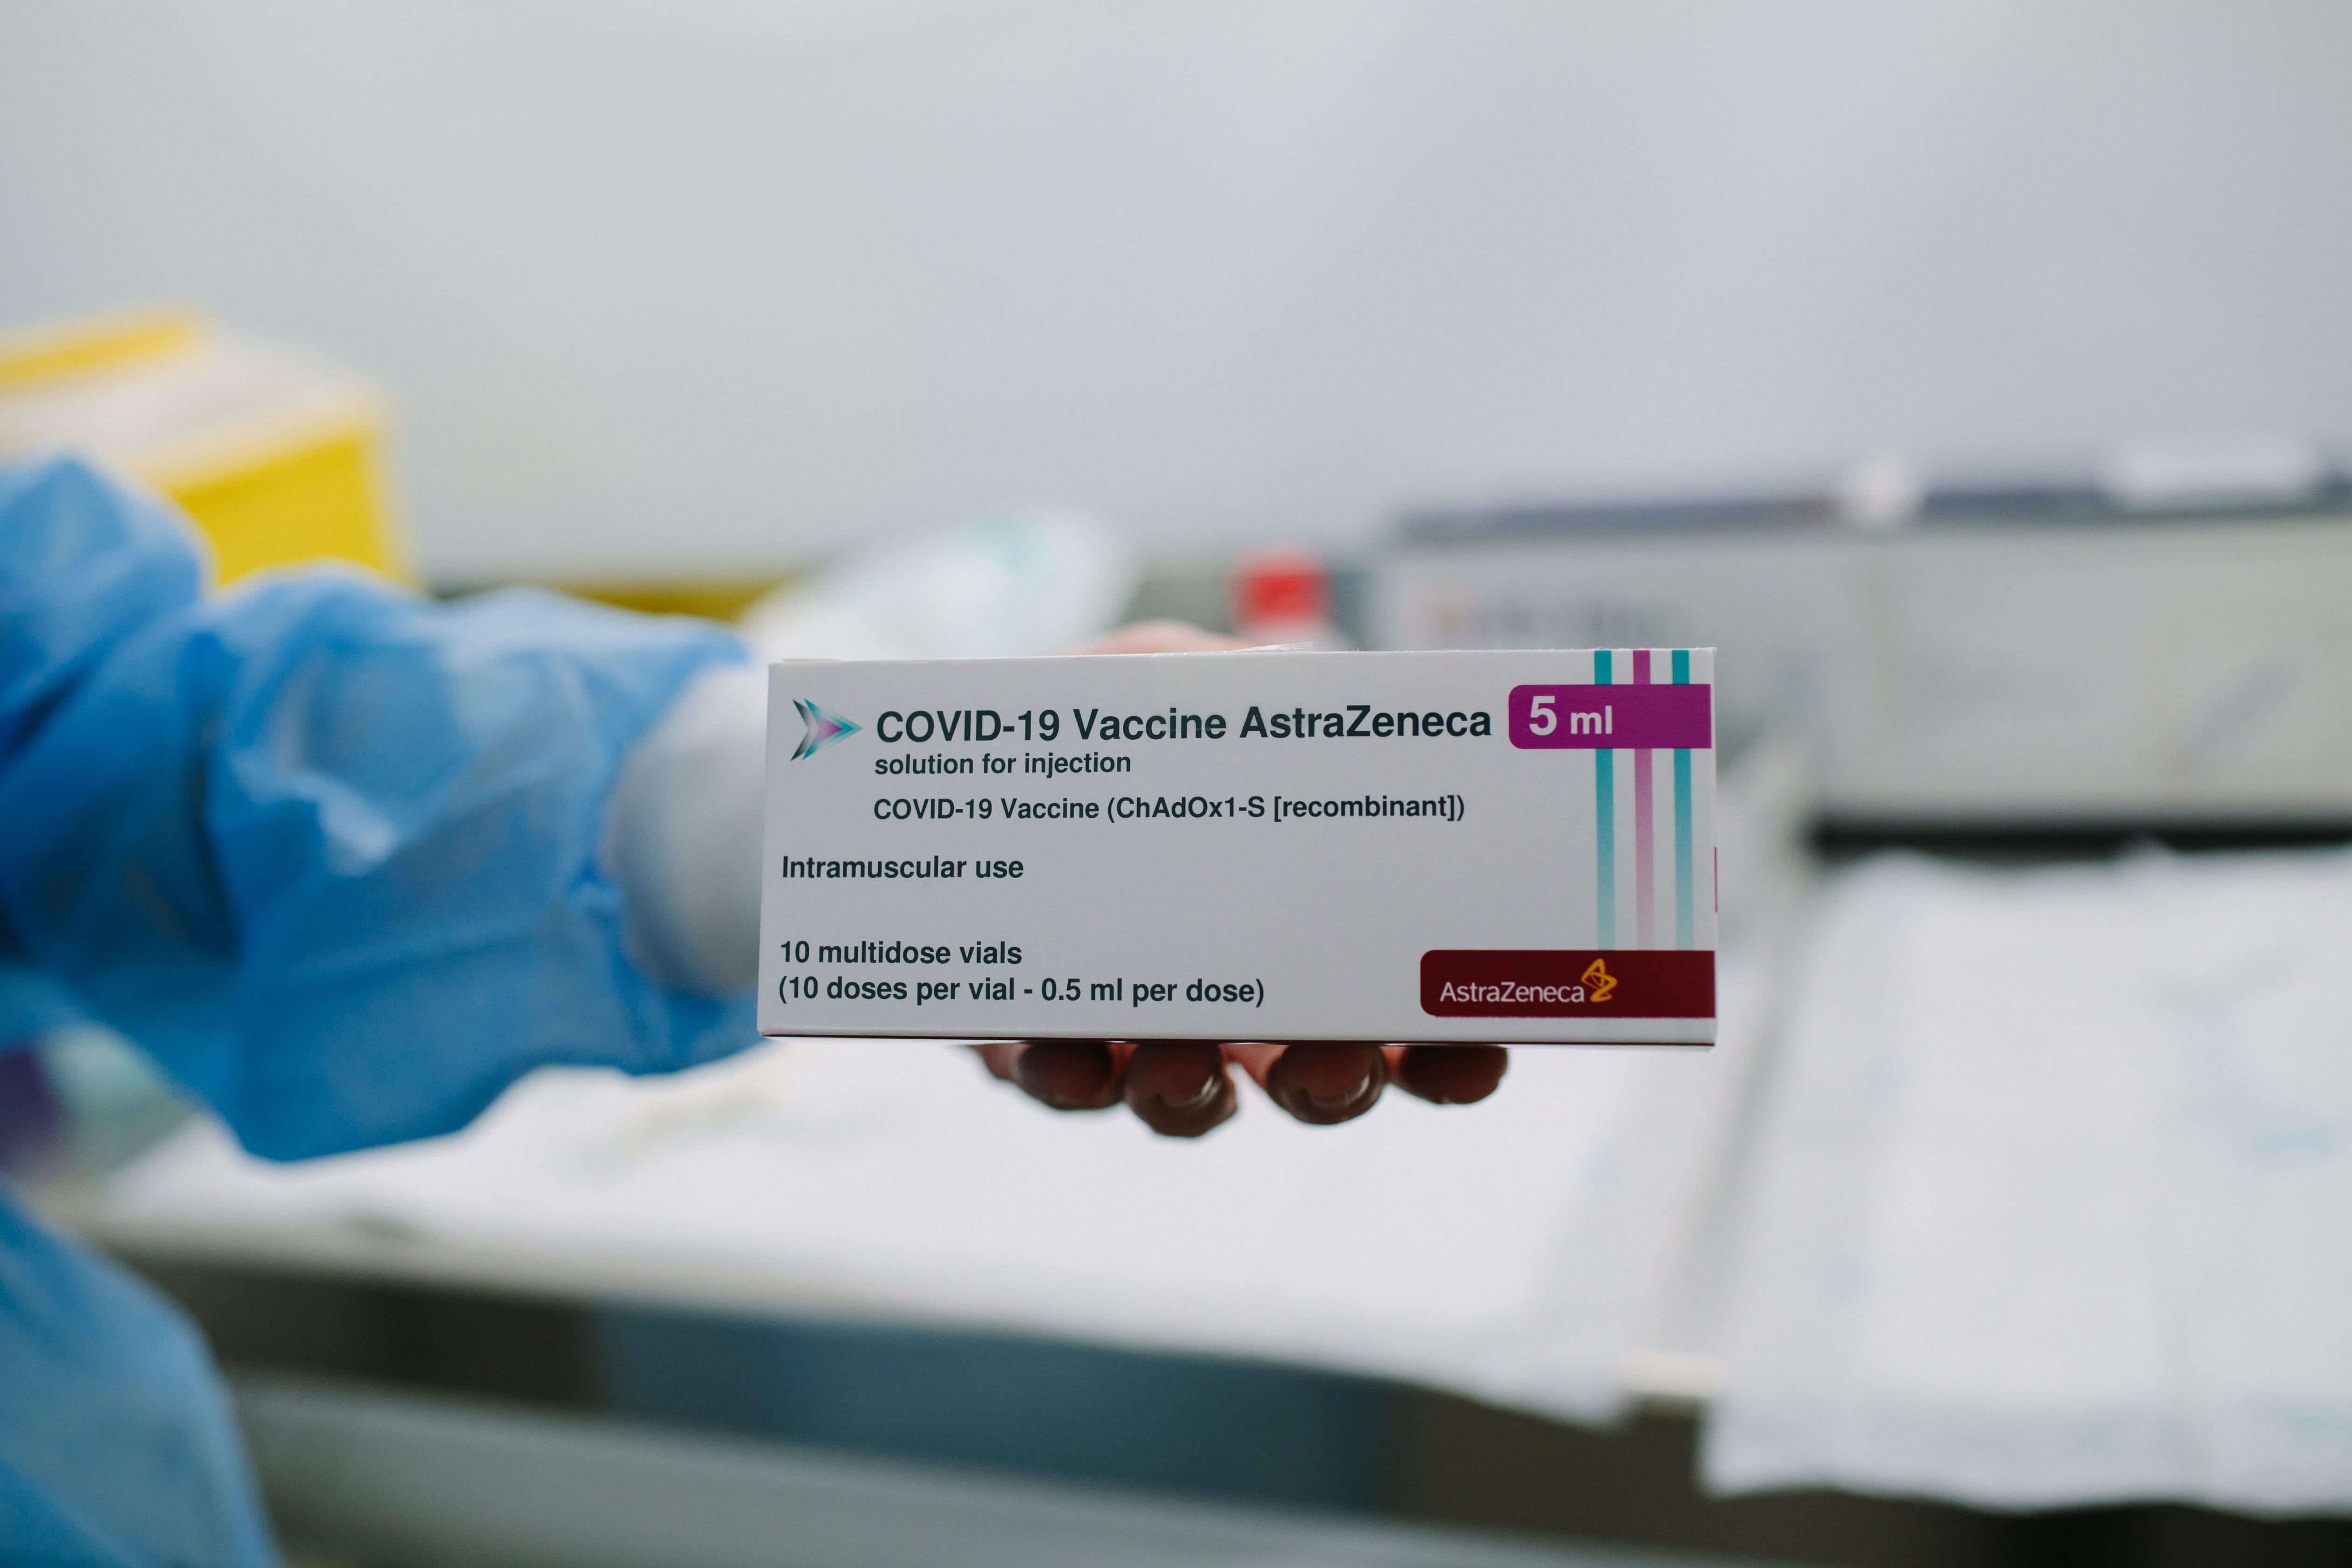 Vaccinazioni, Lombardia ferma i richiami under 60 dopo prima dose Astrazeneca